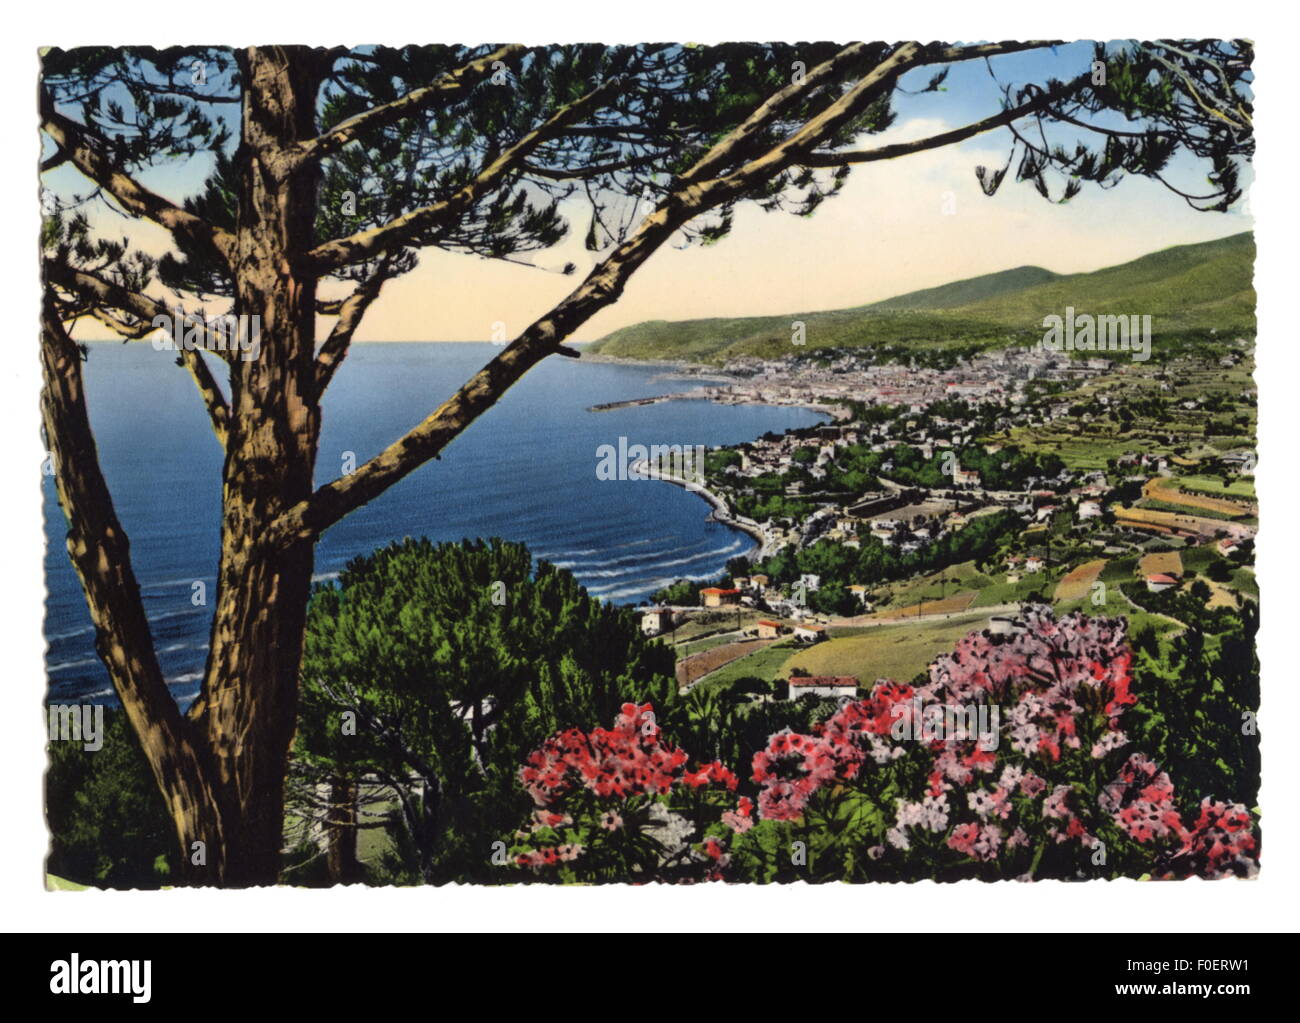 Geografia / viaggio, Italia, San Remo, vista dall'Oriente, cartolina fotografica, postsegnato anni '50, diritti aggiuntivi-clearences-non disponibile Foto Stock